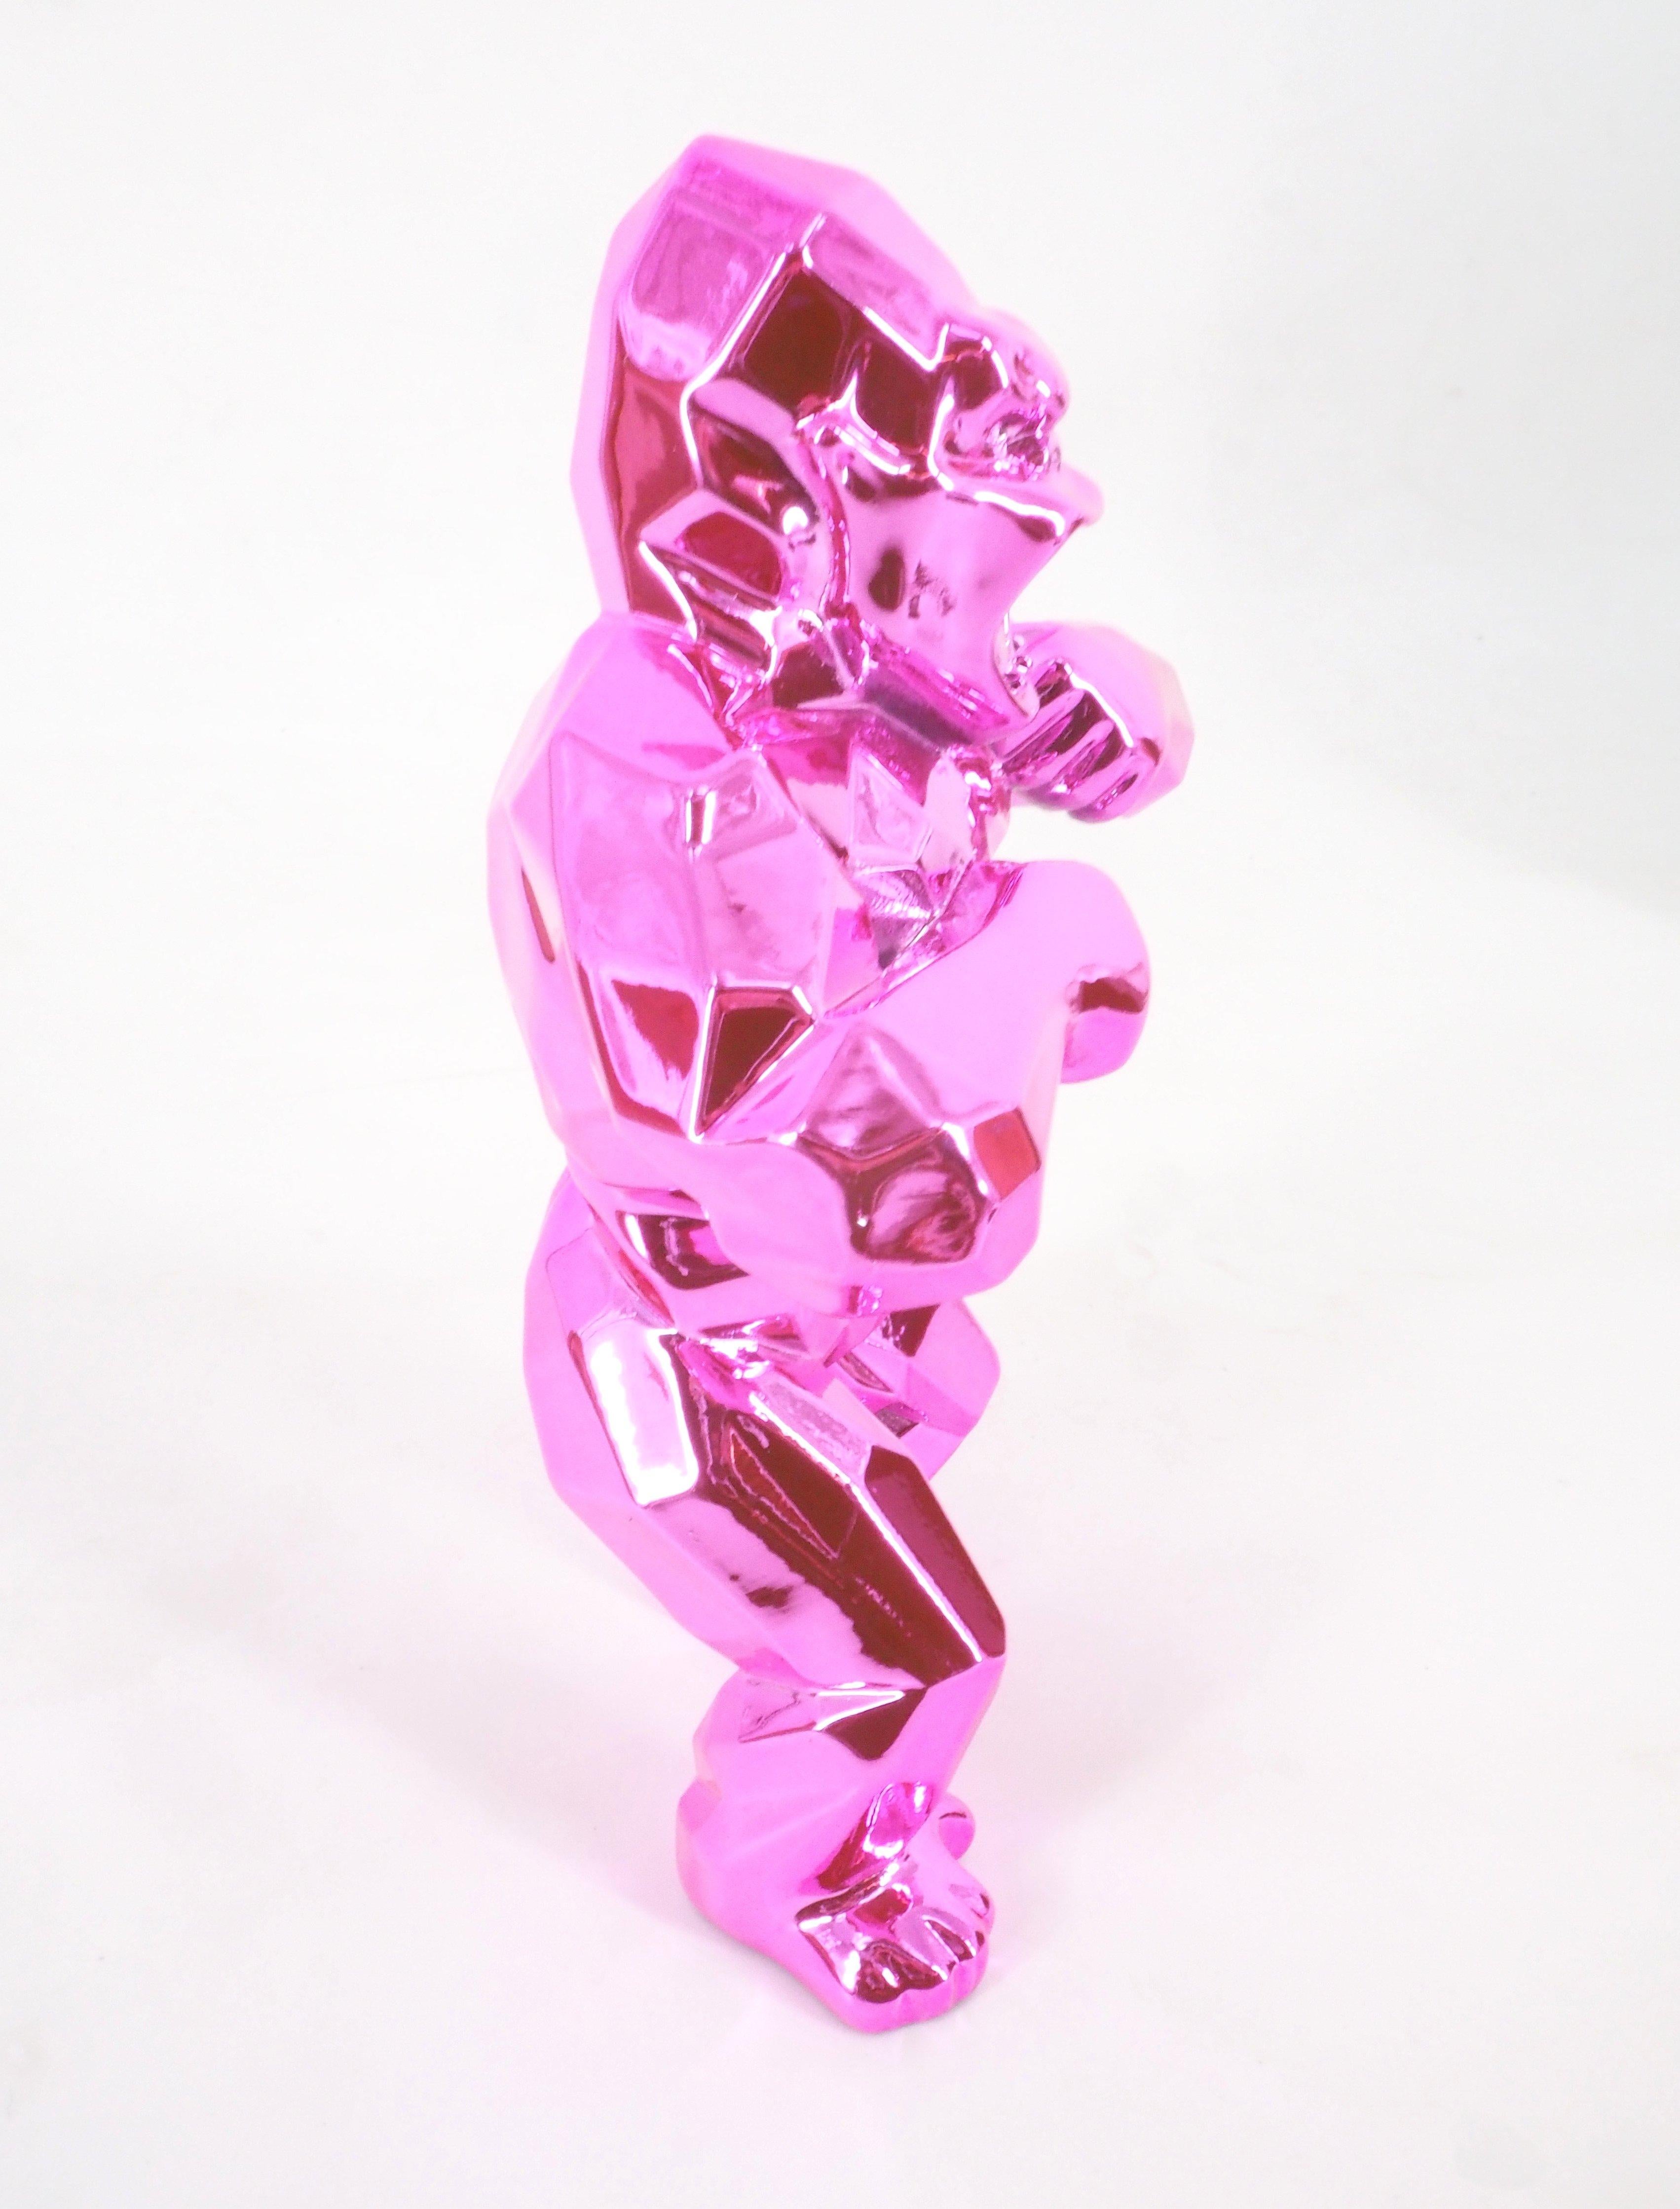 Kong Spirit (Pink edition) - Sculpture - Gray Figurative Sculpture by Richard Orlinski